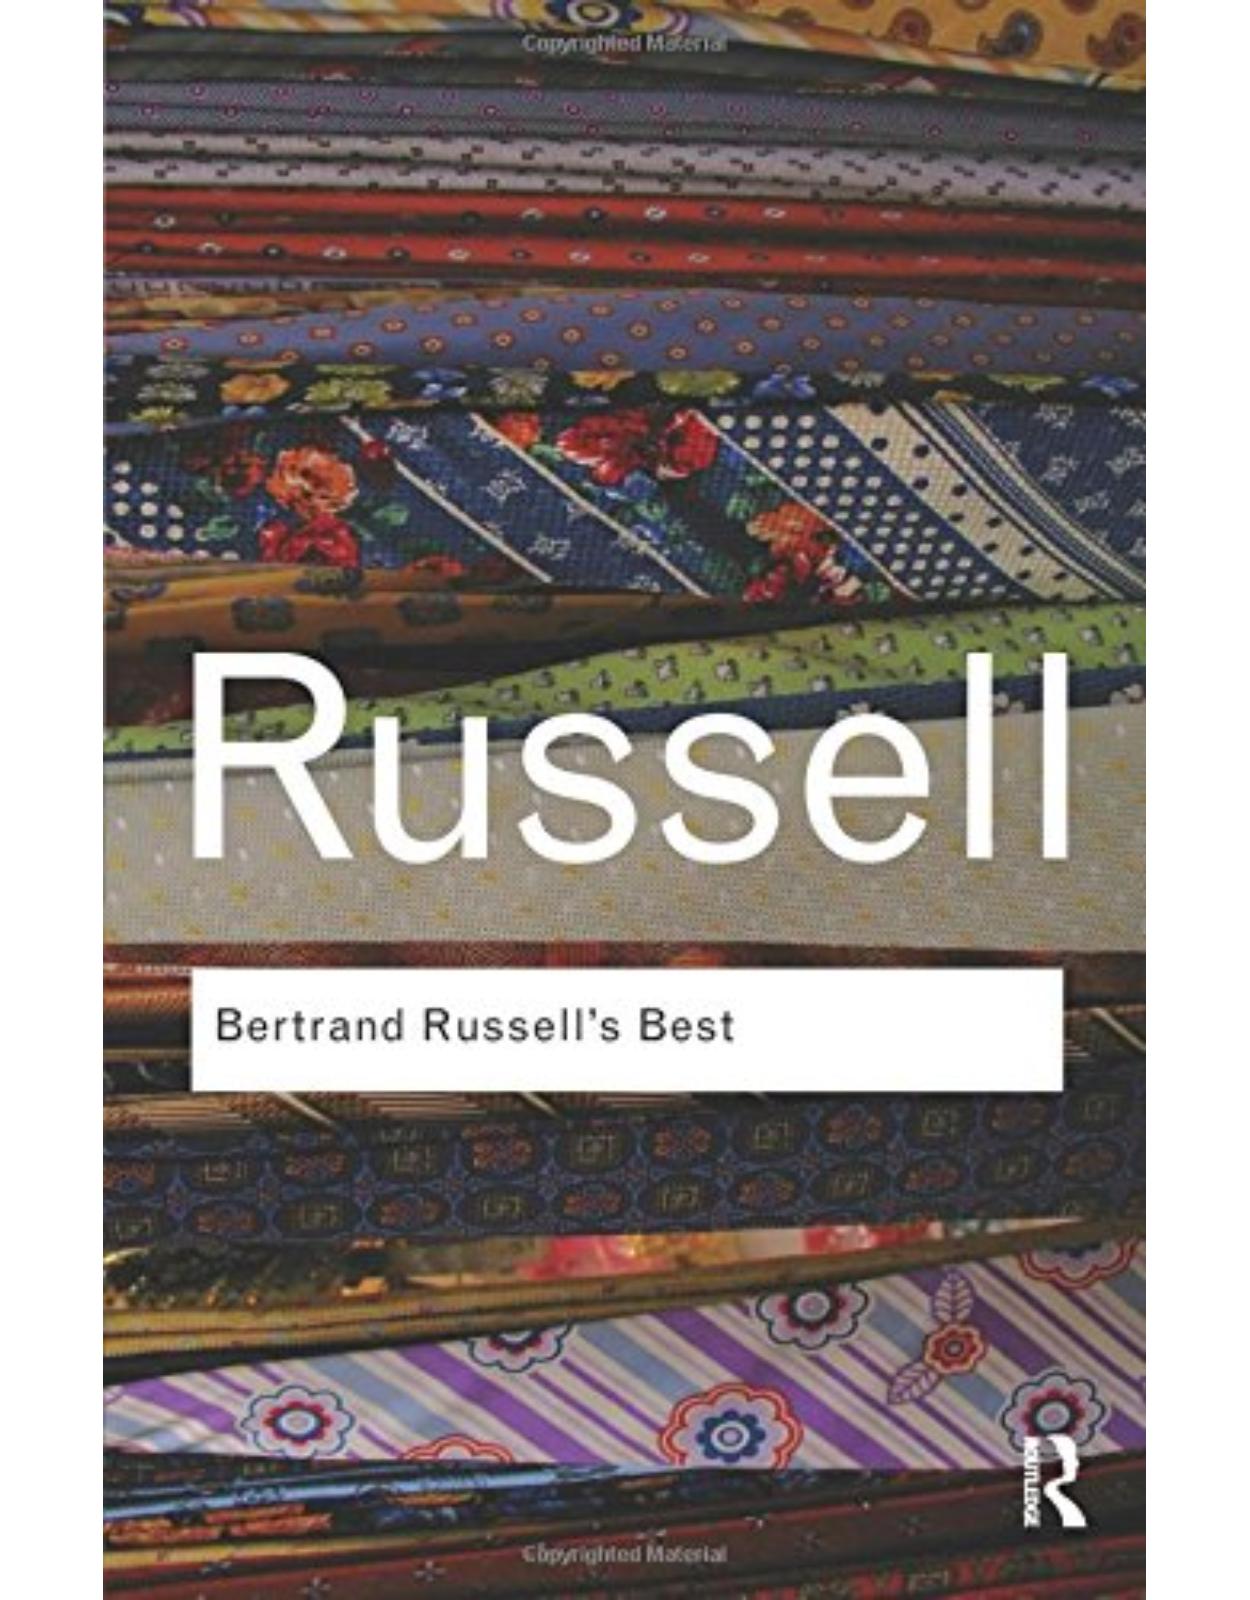 Bertrand Russell’s Best